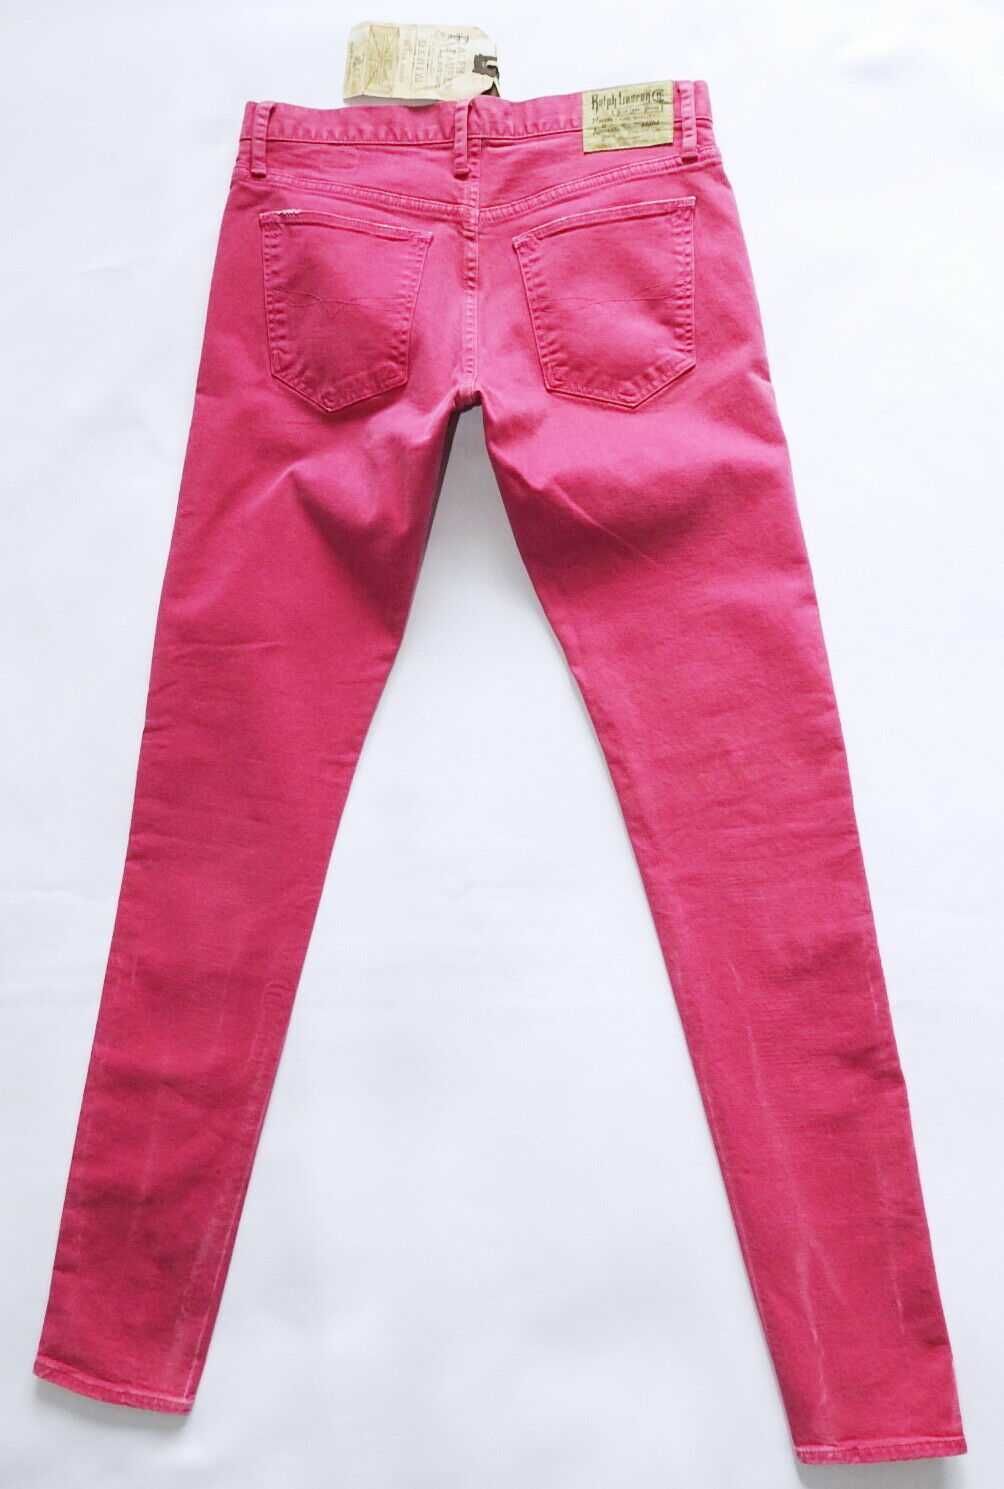 Ralph Lauren Carson США Новые джинсы size27 варка малиновые оригинал